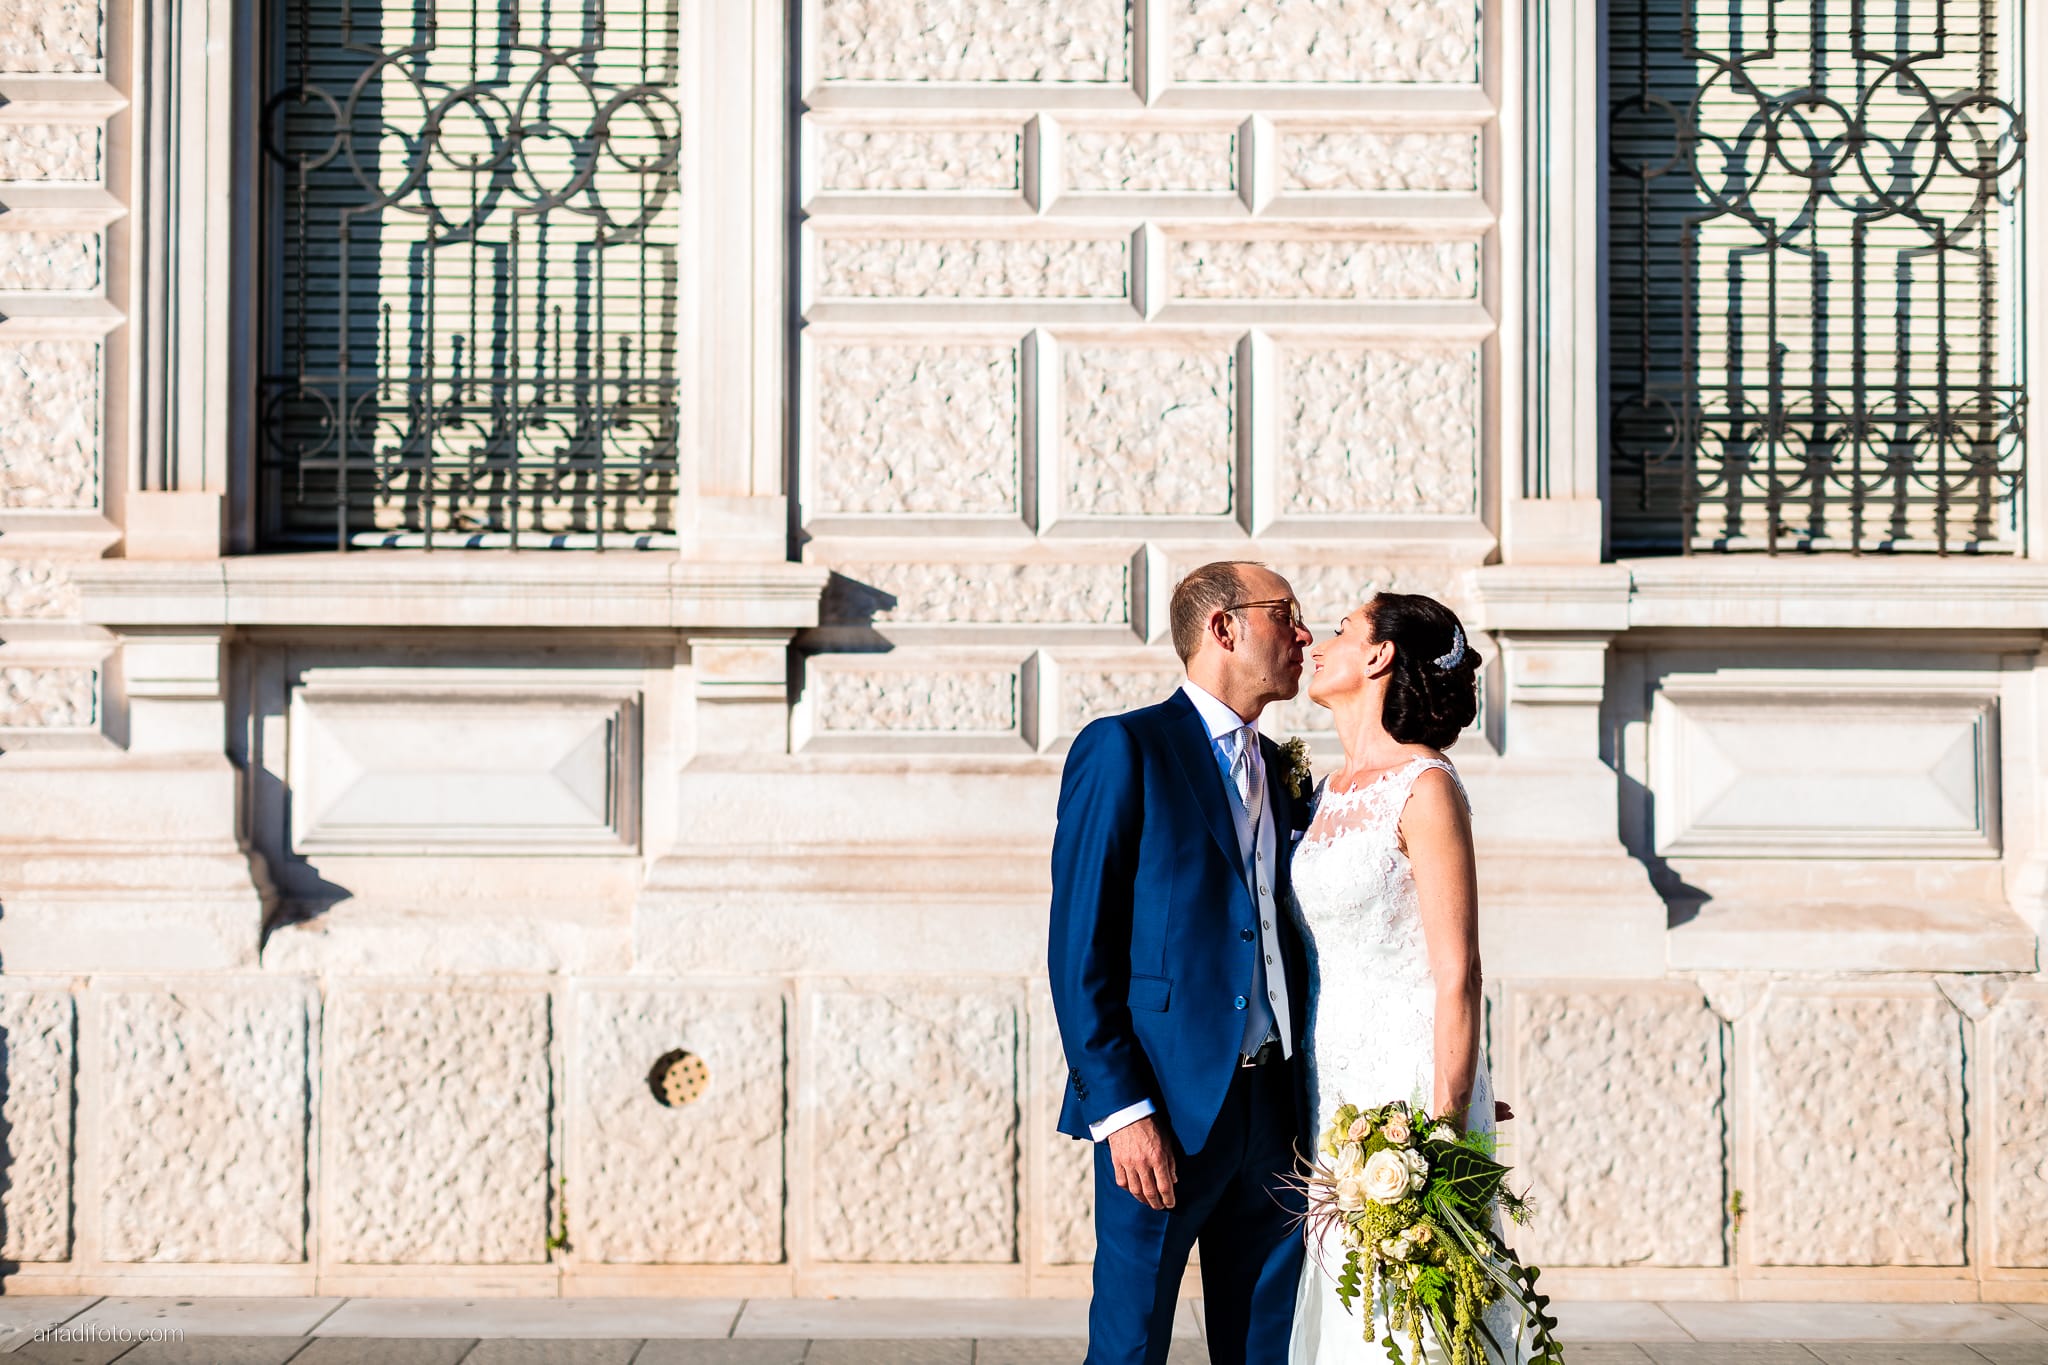 Anna Paolo Matrimonio Santa Maria Maggiore Hotel Riviera Trieste ritratti sposi Molo Audace Piazza Unità